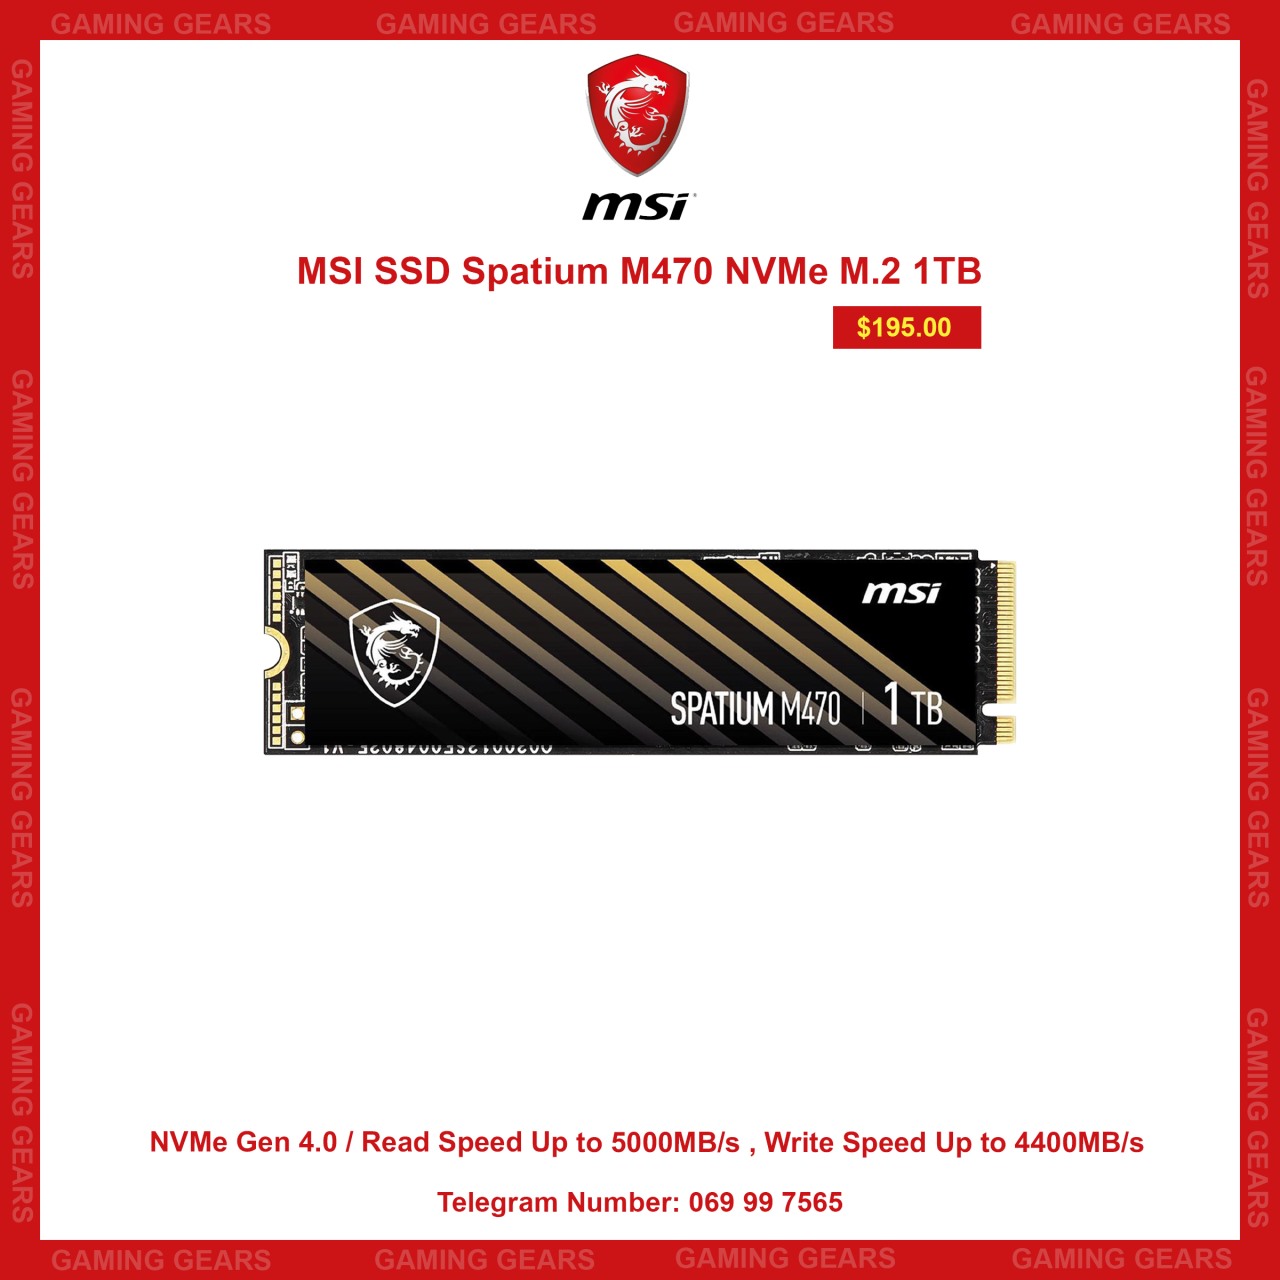 MSI SSD Spatium M470 NVMe M.2 1TB